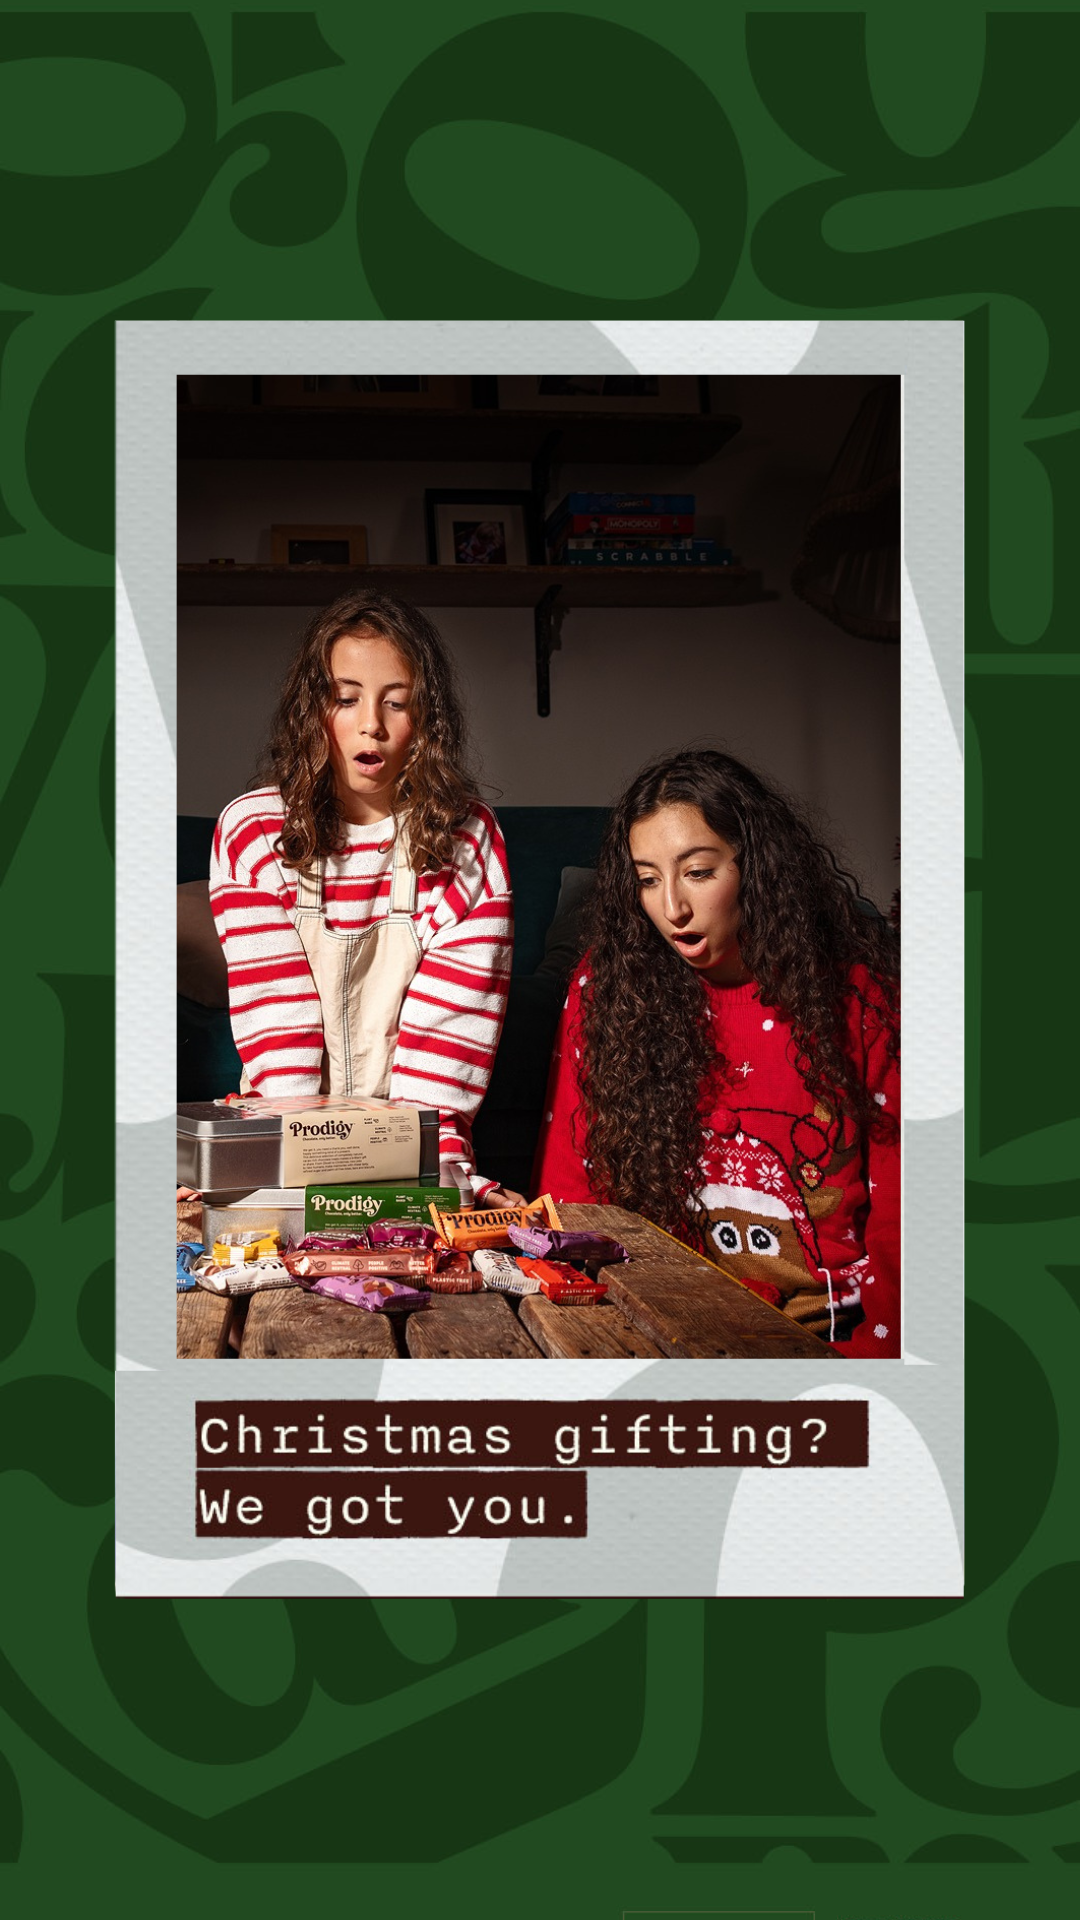 Christmas Gifting? We Got You.